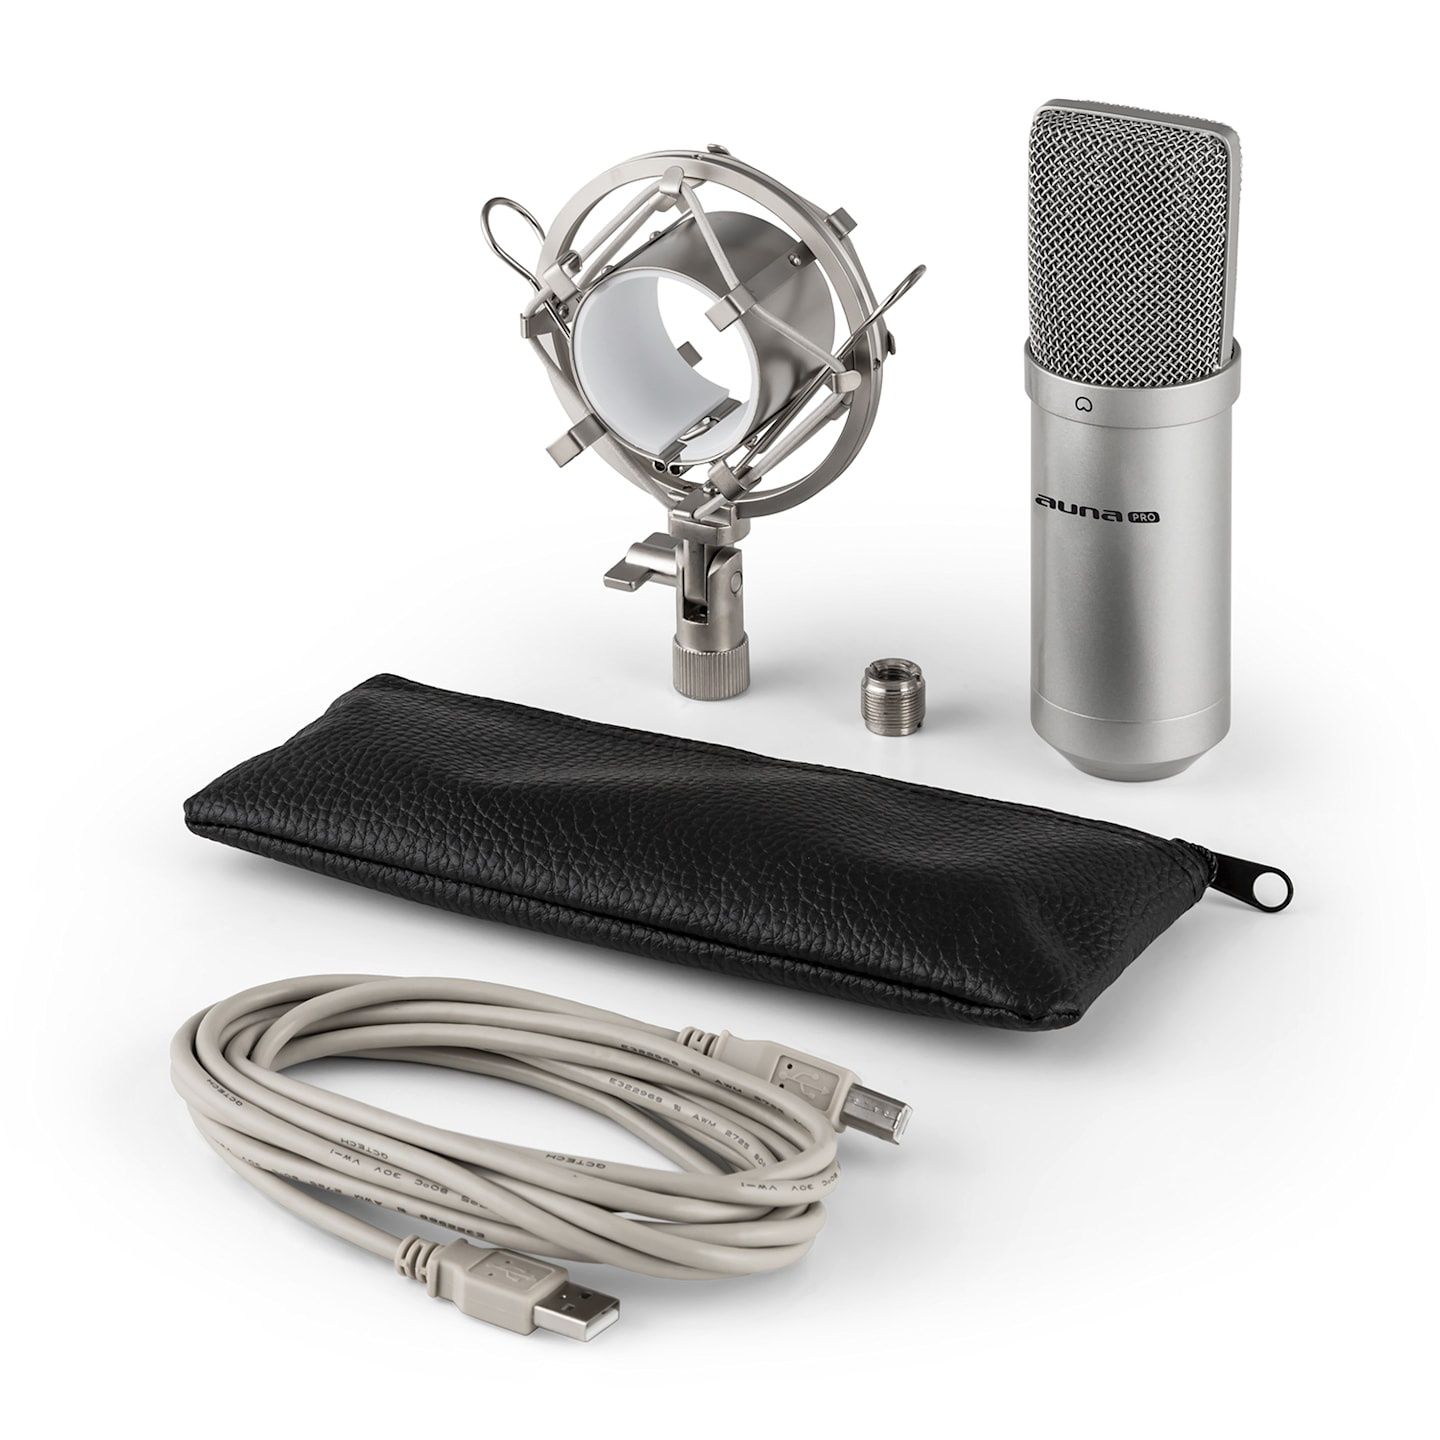 Конденсаторный микрофон auna Pro MIC-900S-LED Германия